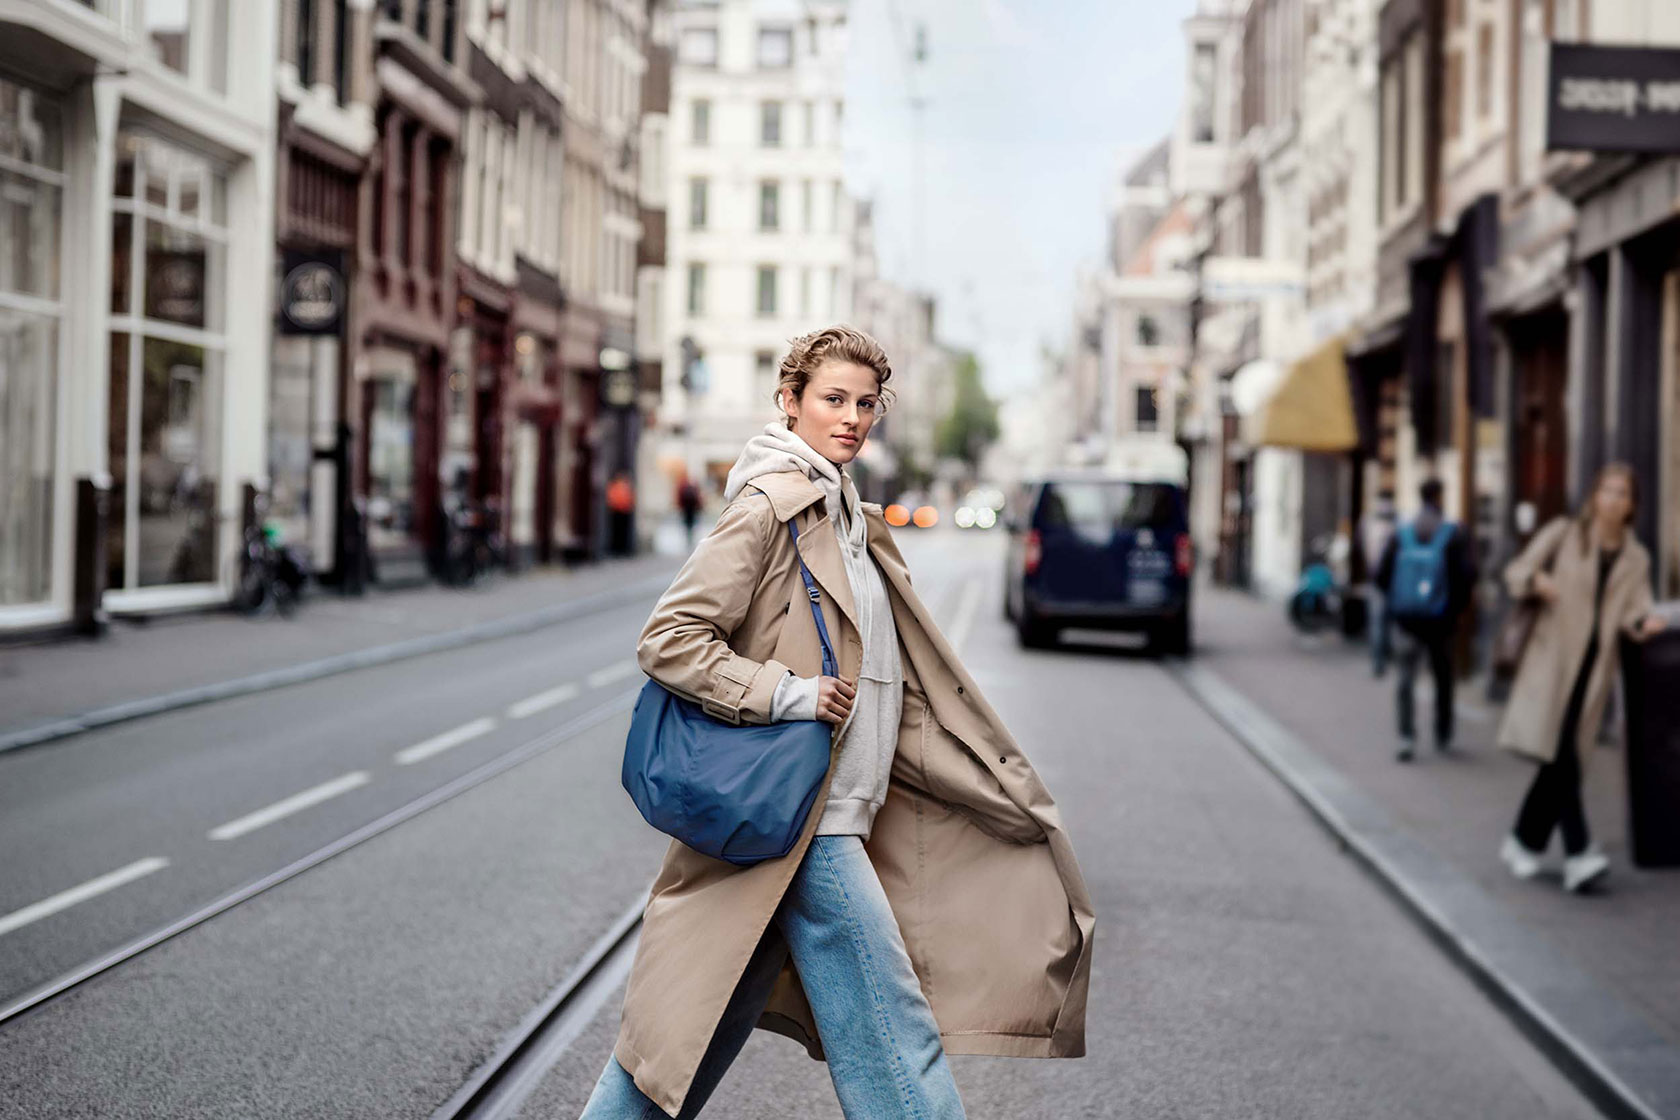 Kvinna korsar en gata i Amsterdam